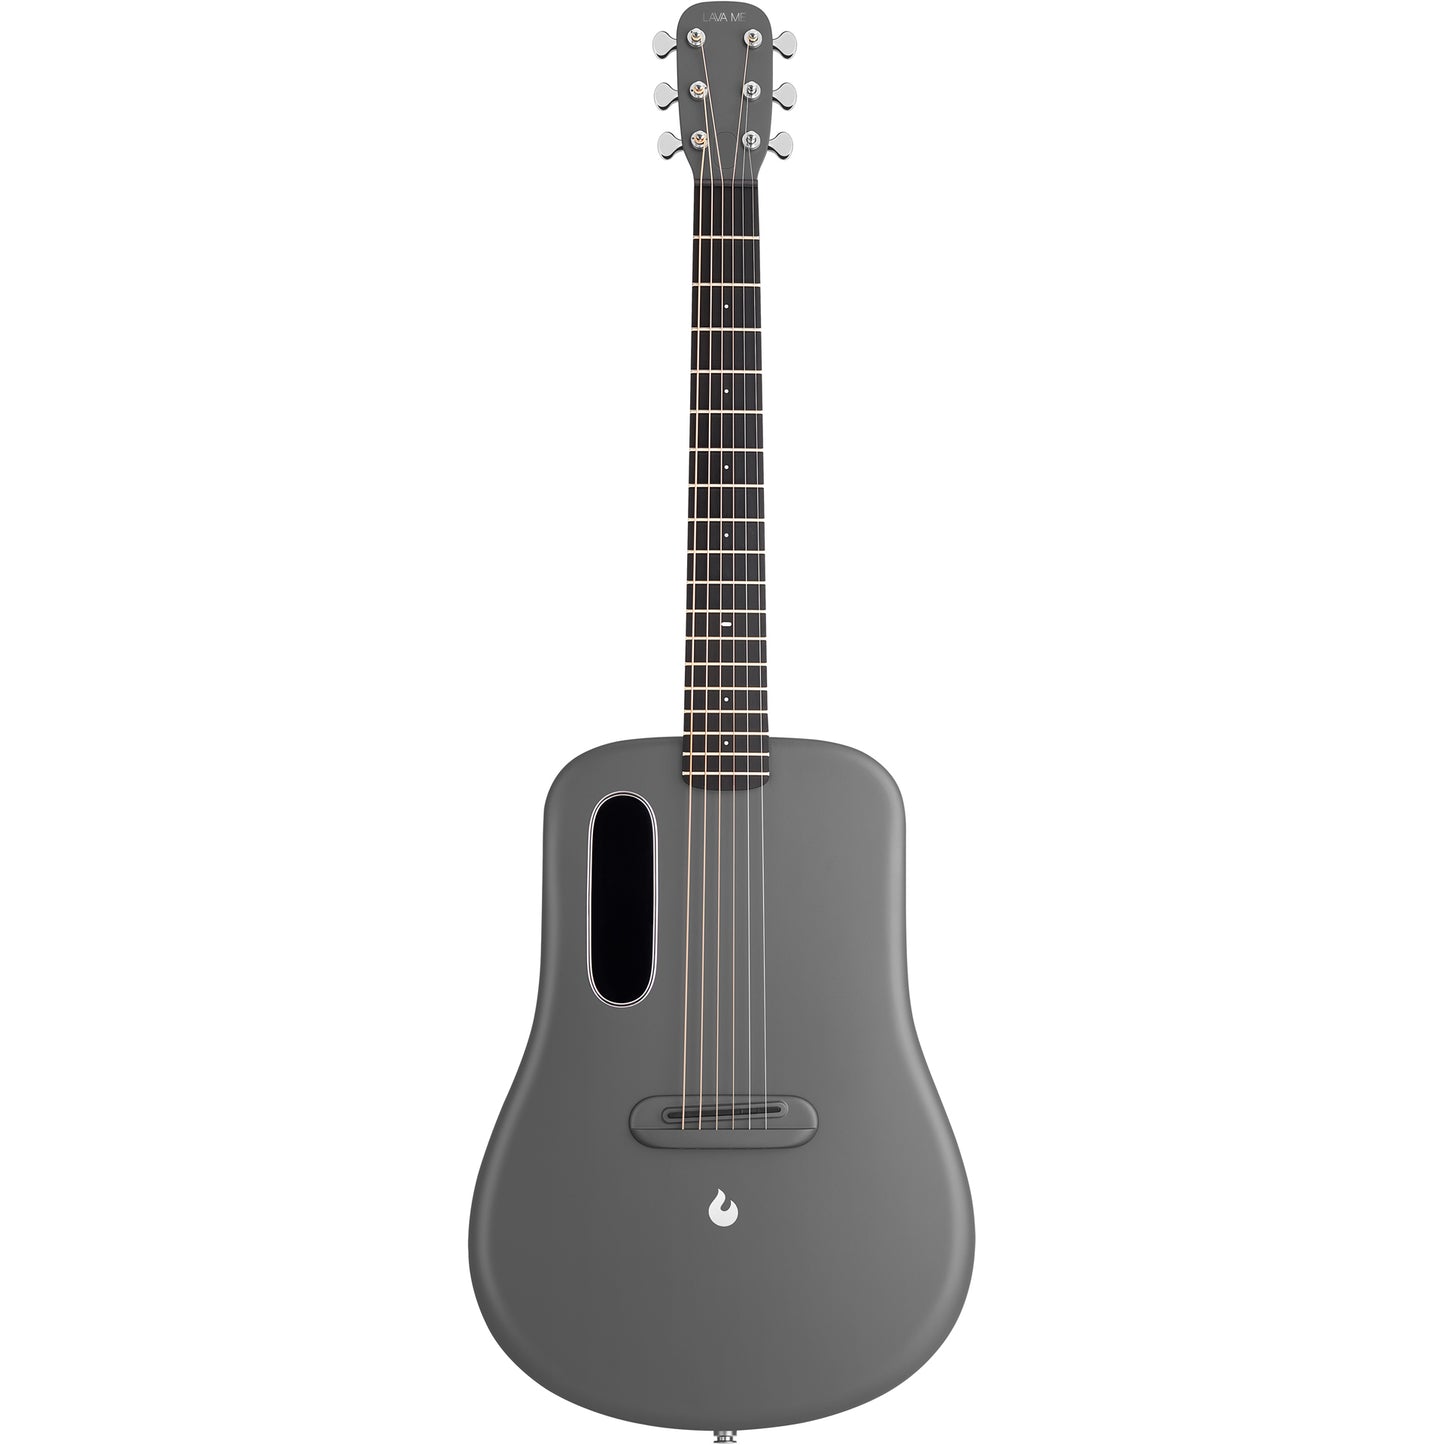 Lava Music ME 4 Carbon Fiber 36” Acoustic Electric Guitar - Space Grey